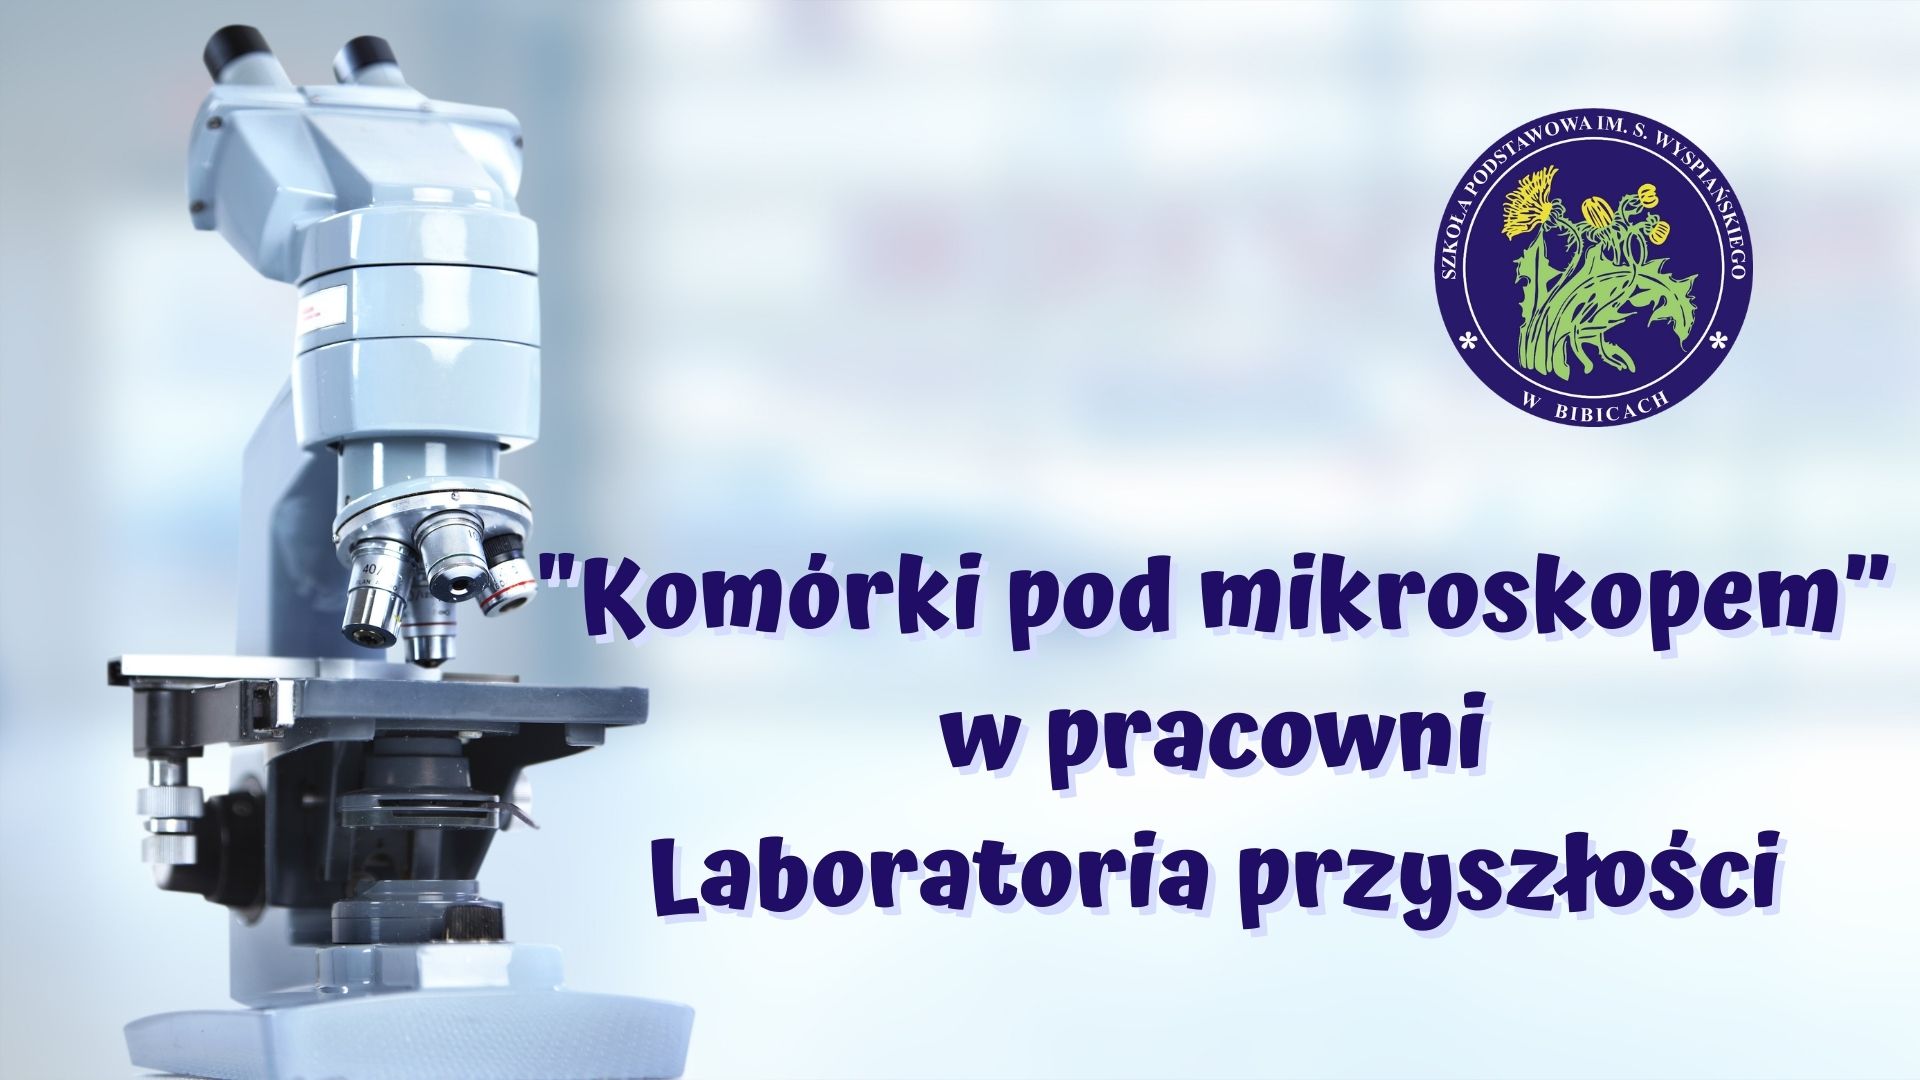 "Komórki pod mikroskopem" w pracowni Laboratoria przyszłości